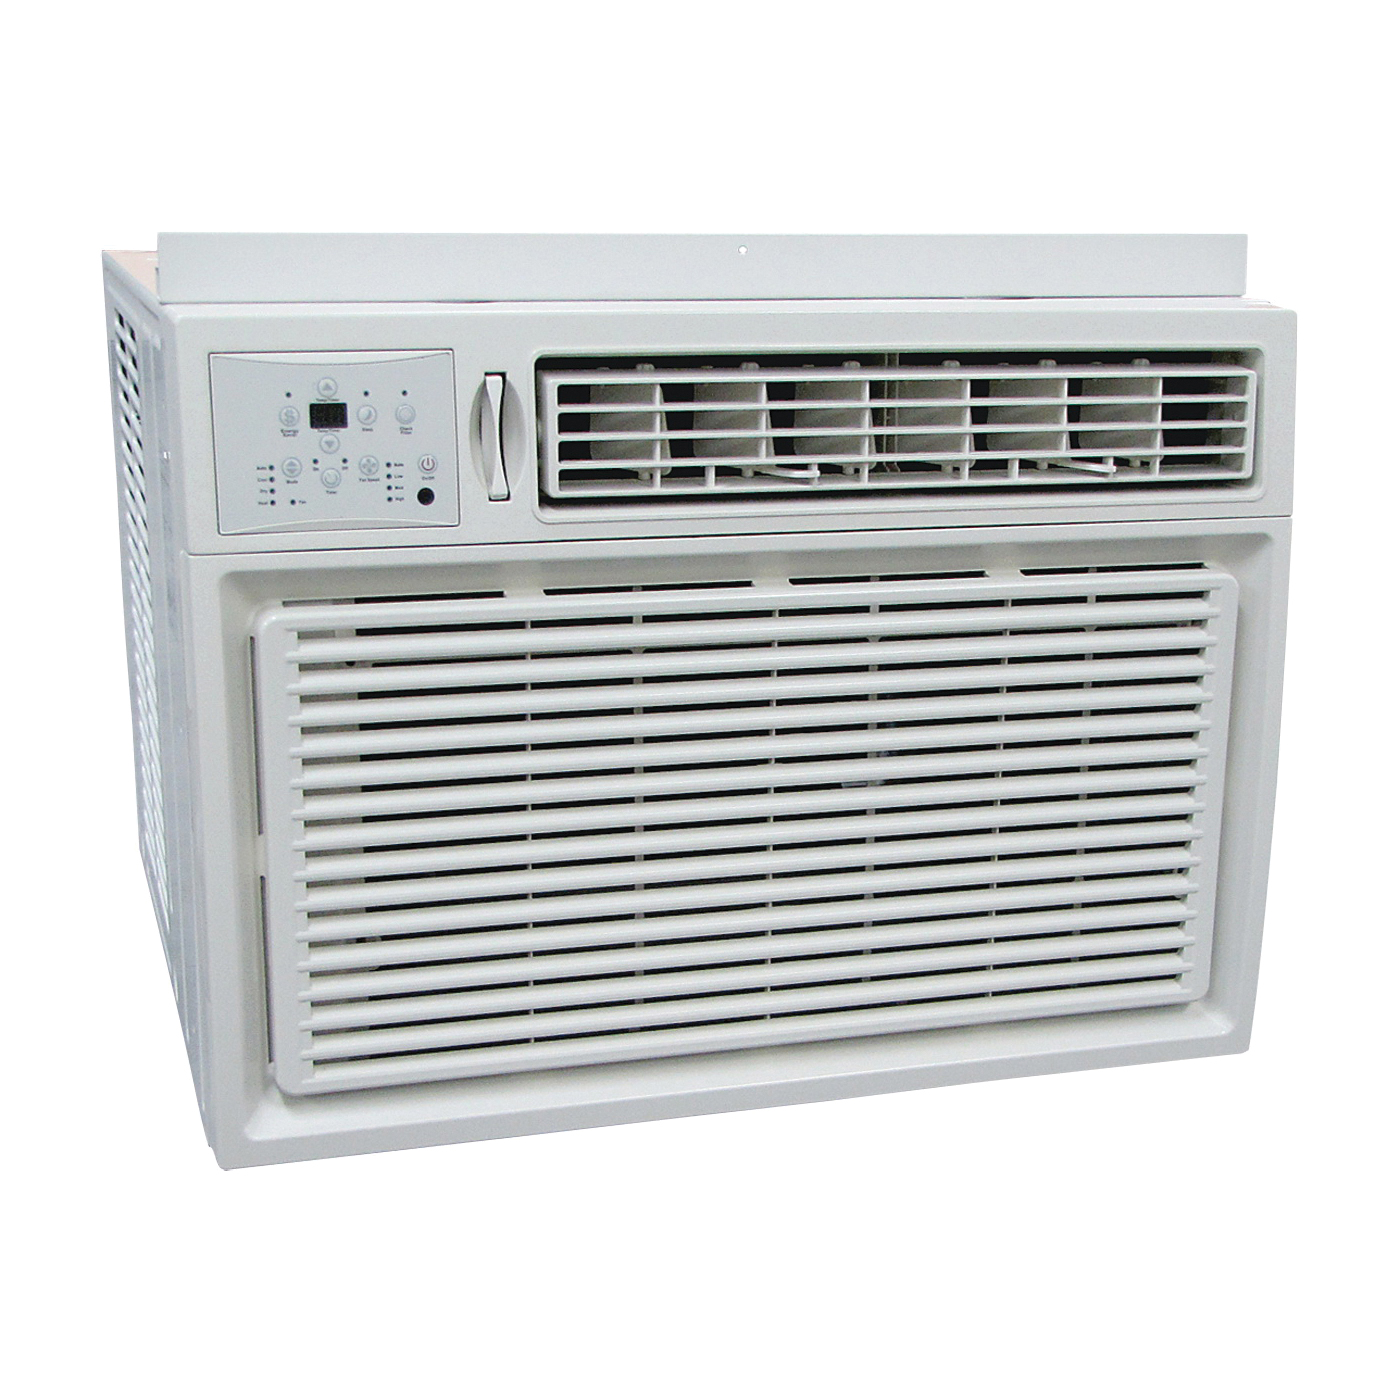 RADS-183P Room Air Conditioner, 208/230 V, 60 Hz, 17,700, 18,000 Btu/hr Cooling, 11.8 EER, 60/57/54 dB